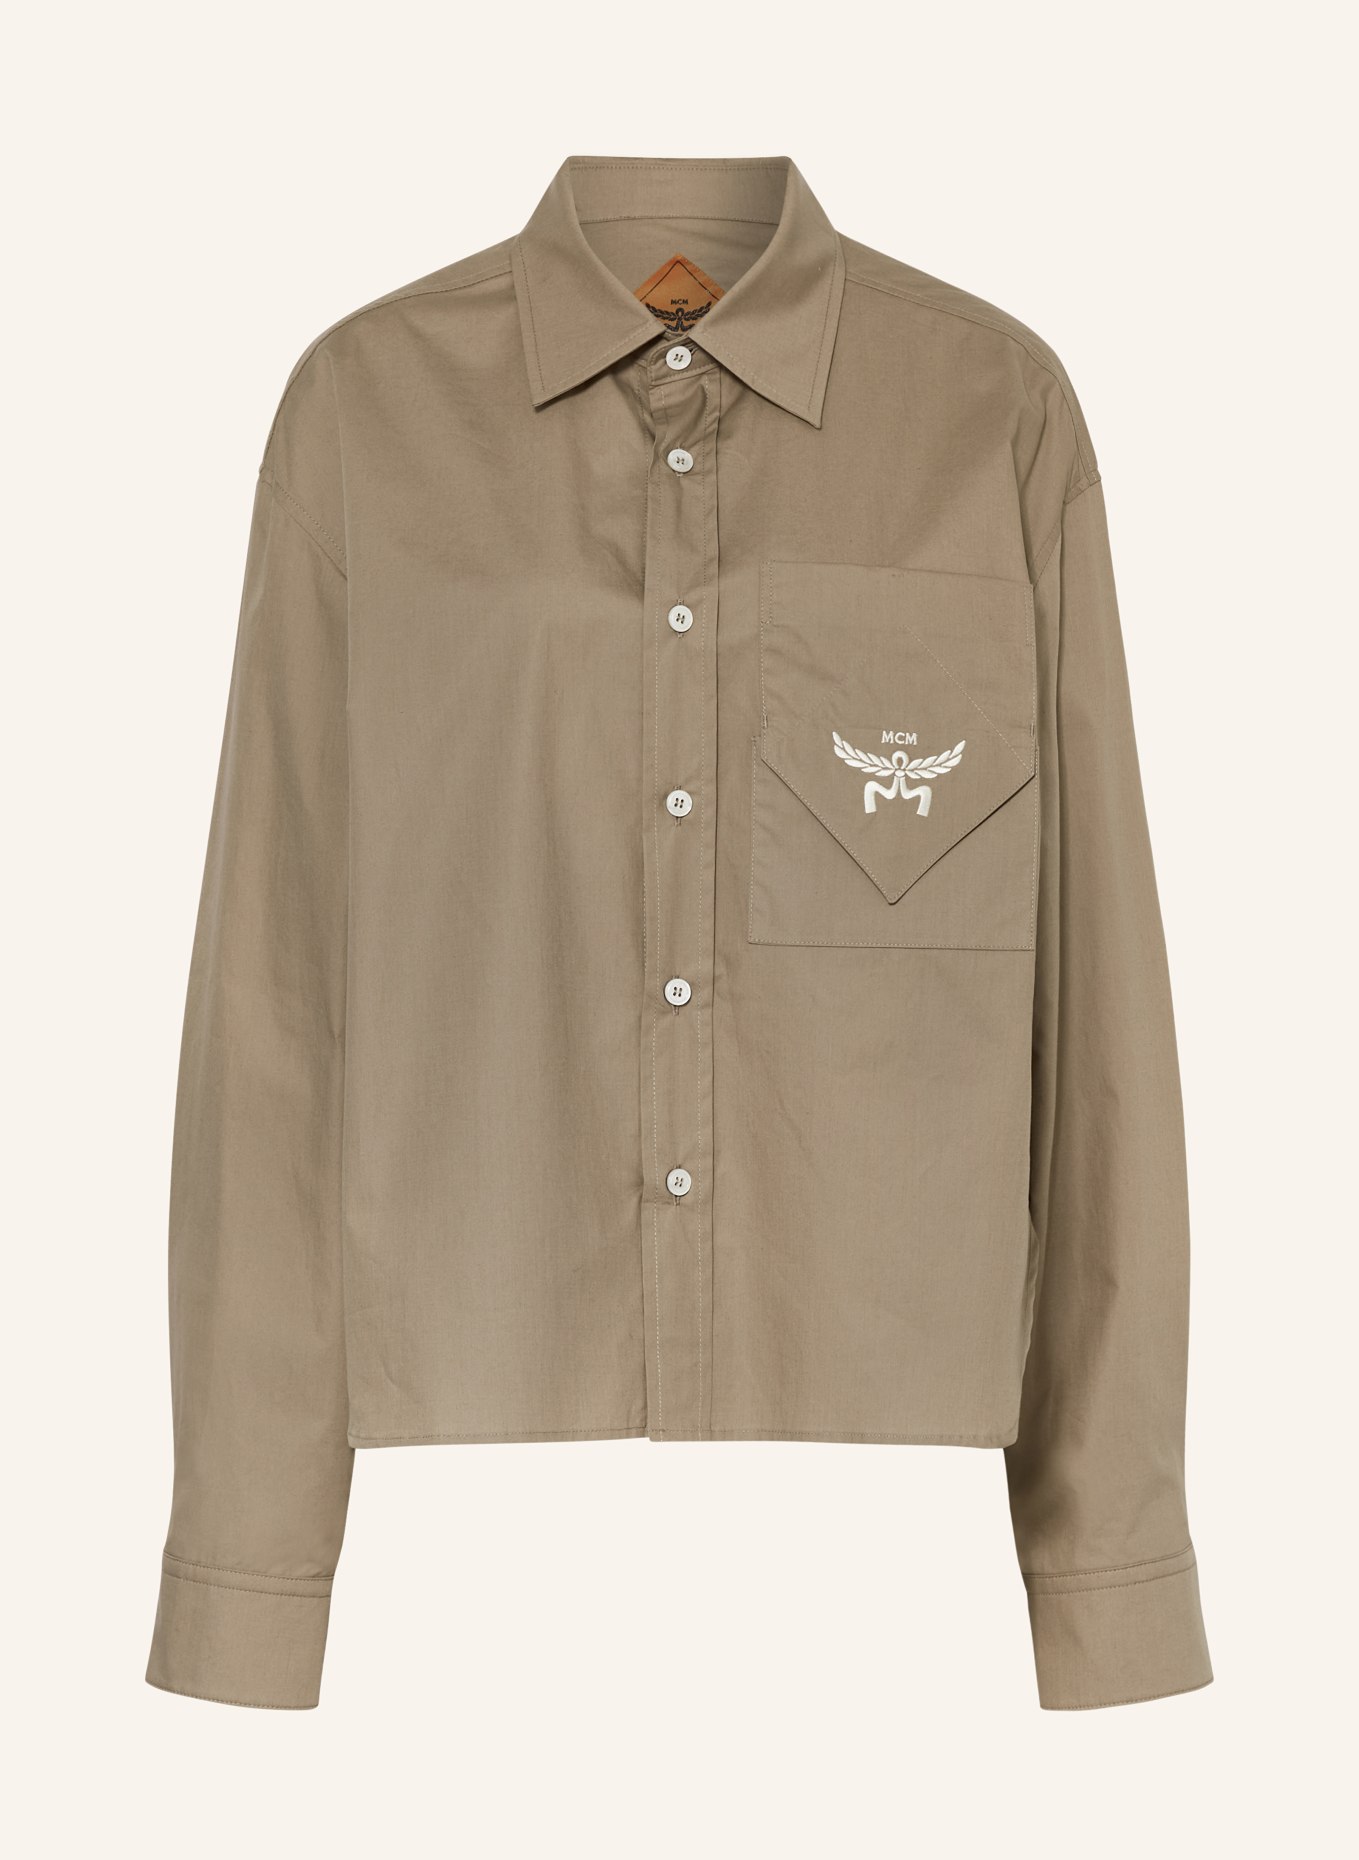 MCM Shirt blouse, Color: BEIGE (Image 1)